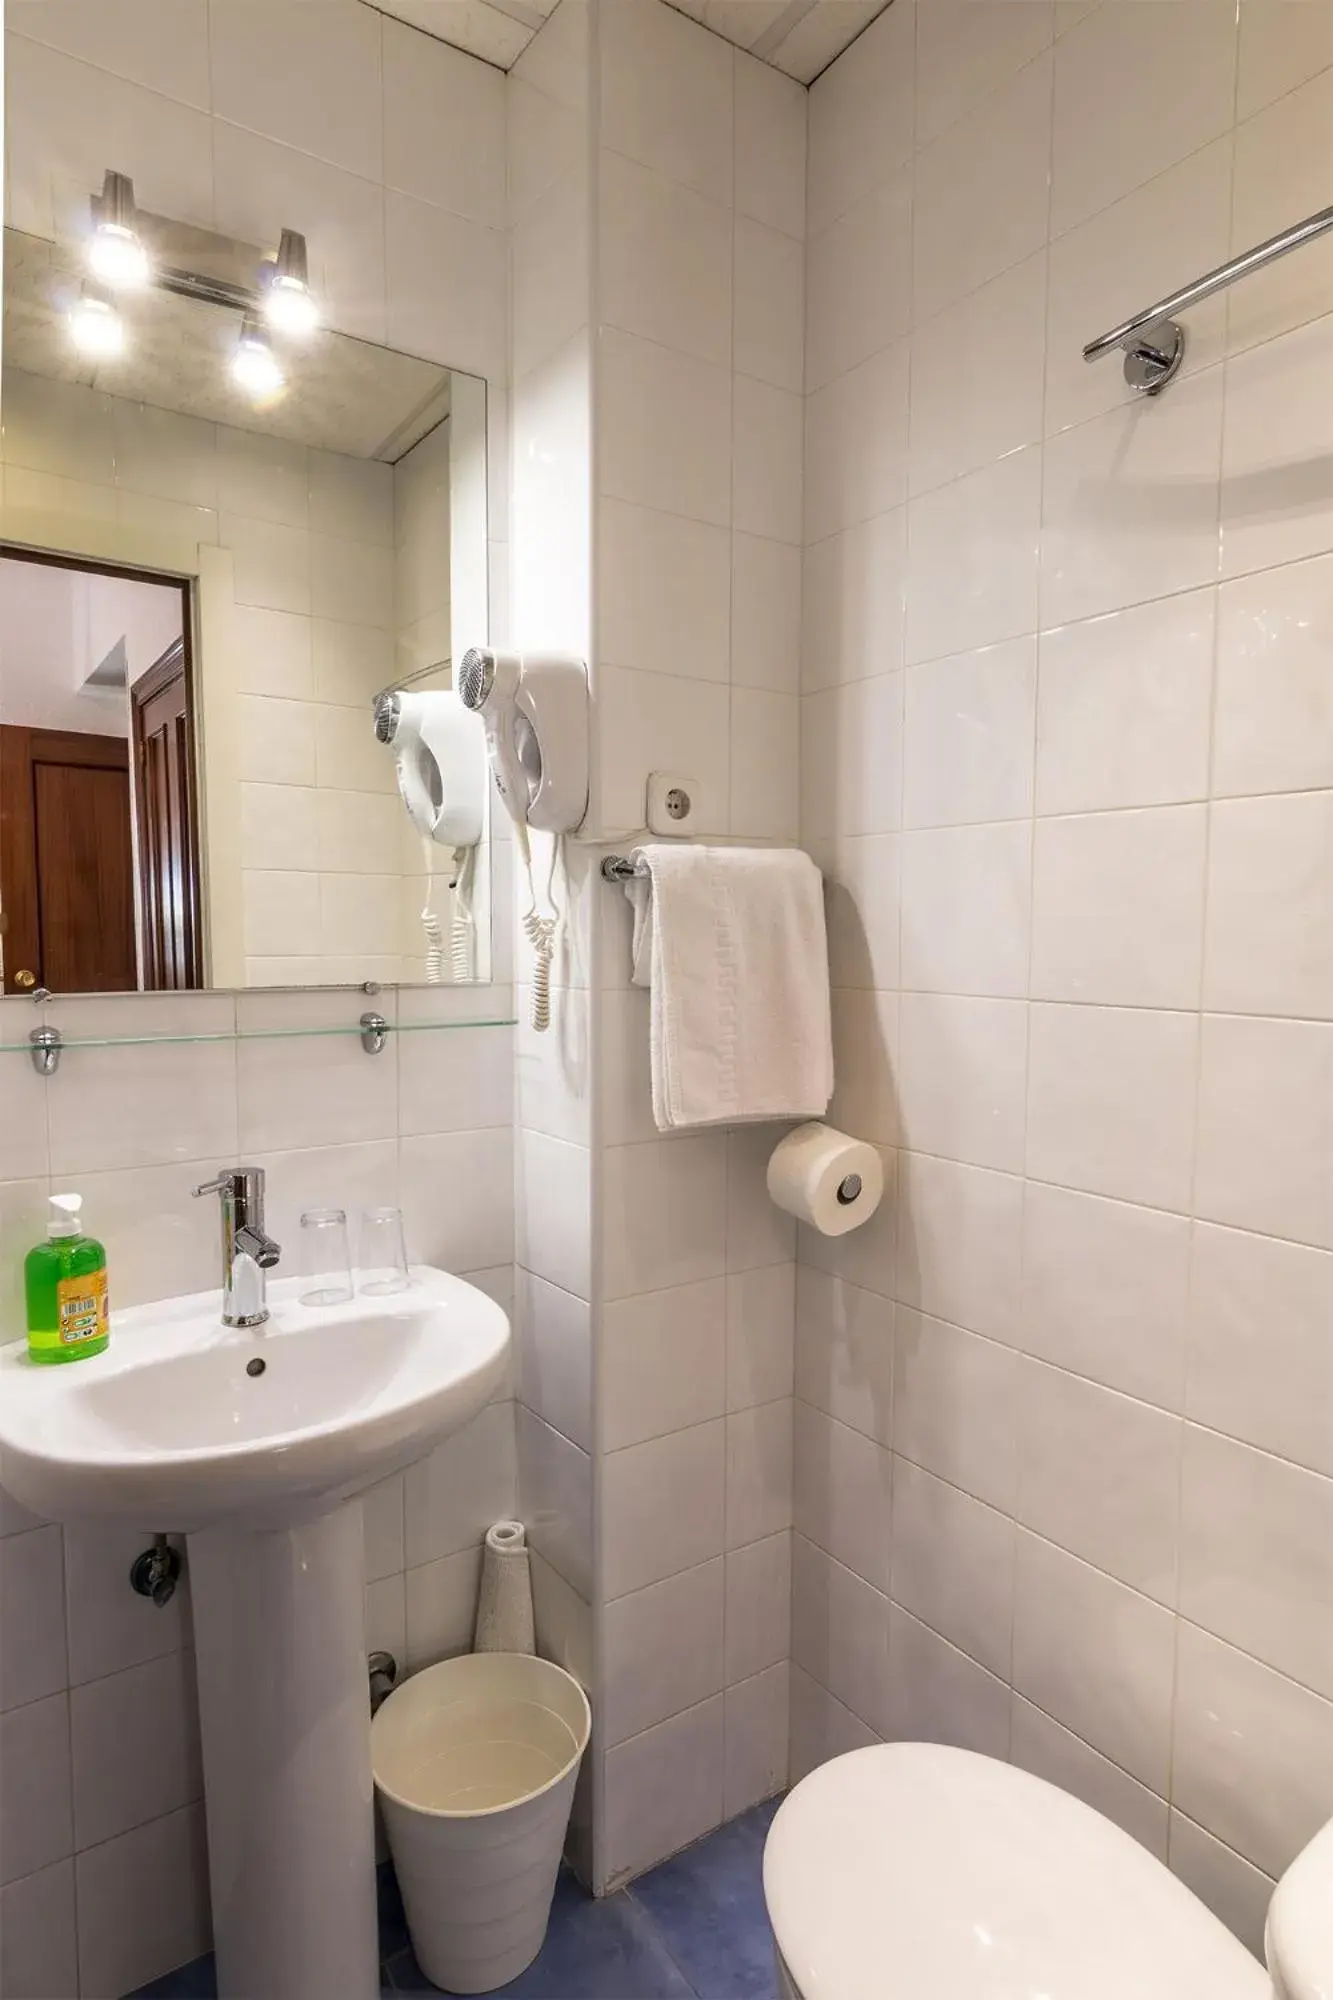 Bathroom in Hotel Mexico